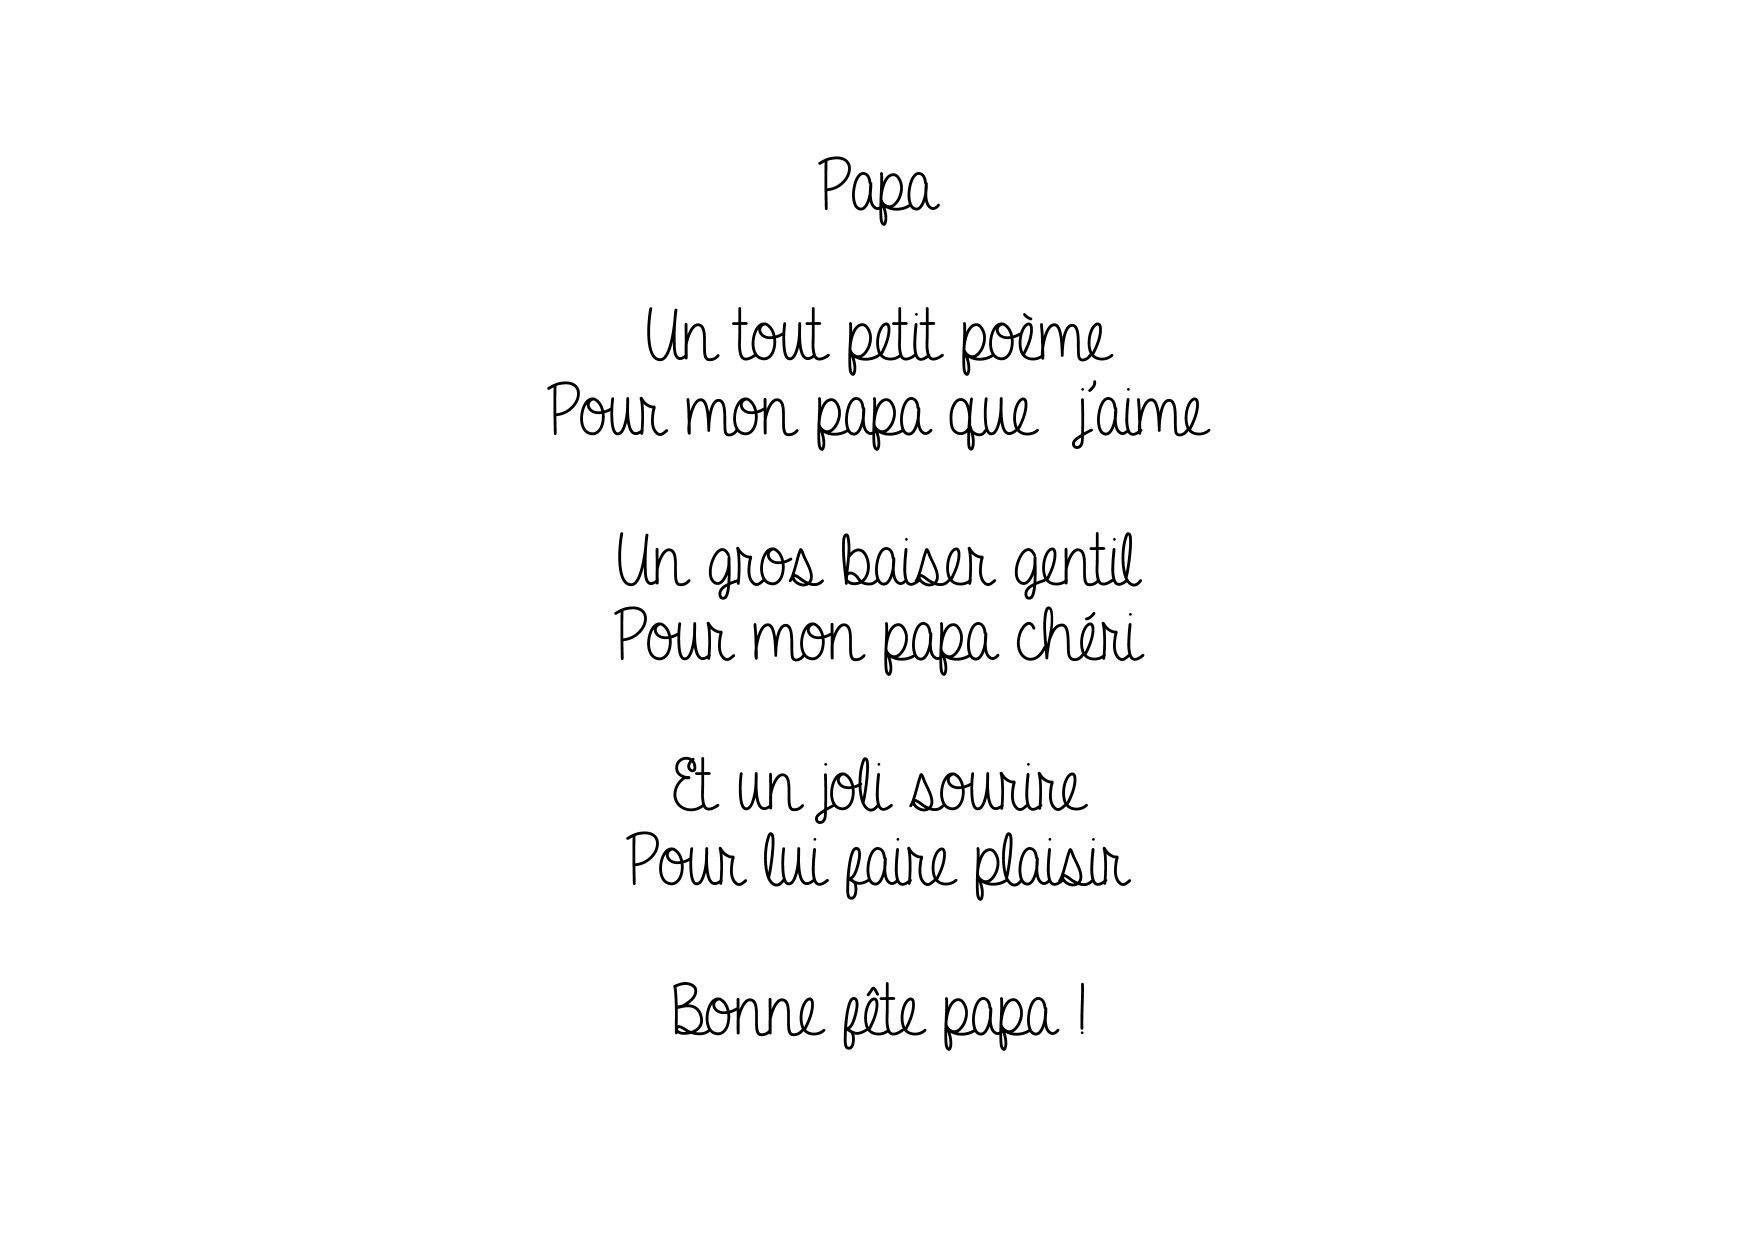 Pin On Fête Des Pères concernant Poeme Pour Papa Court